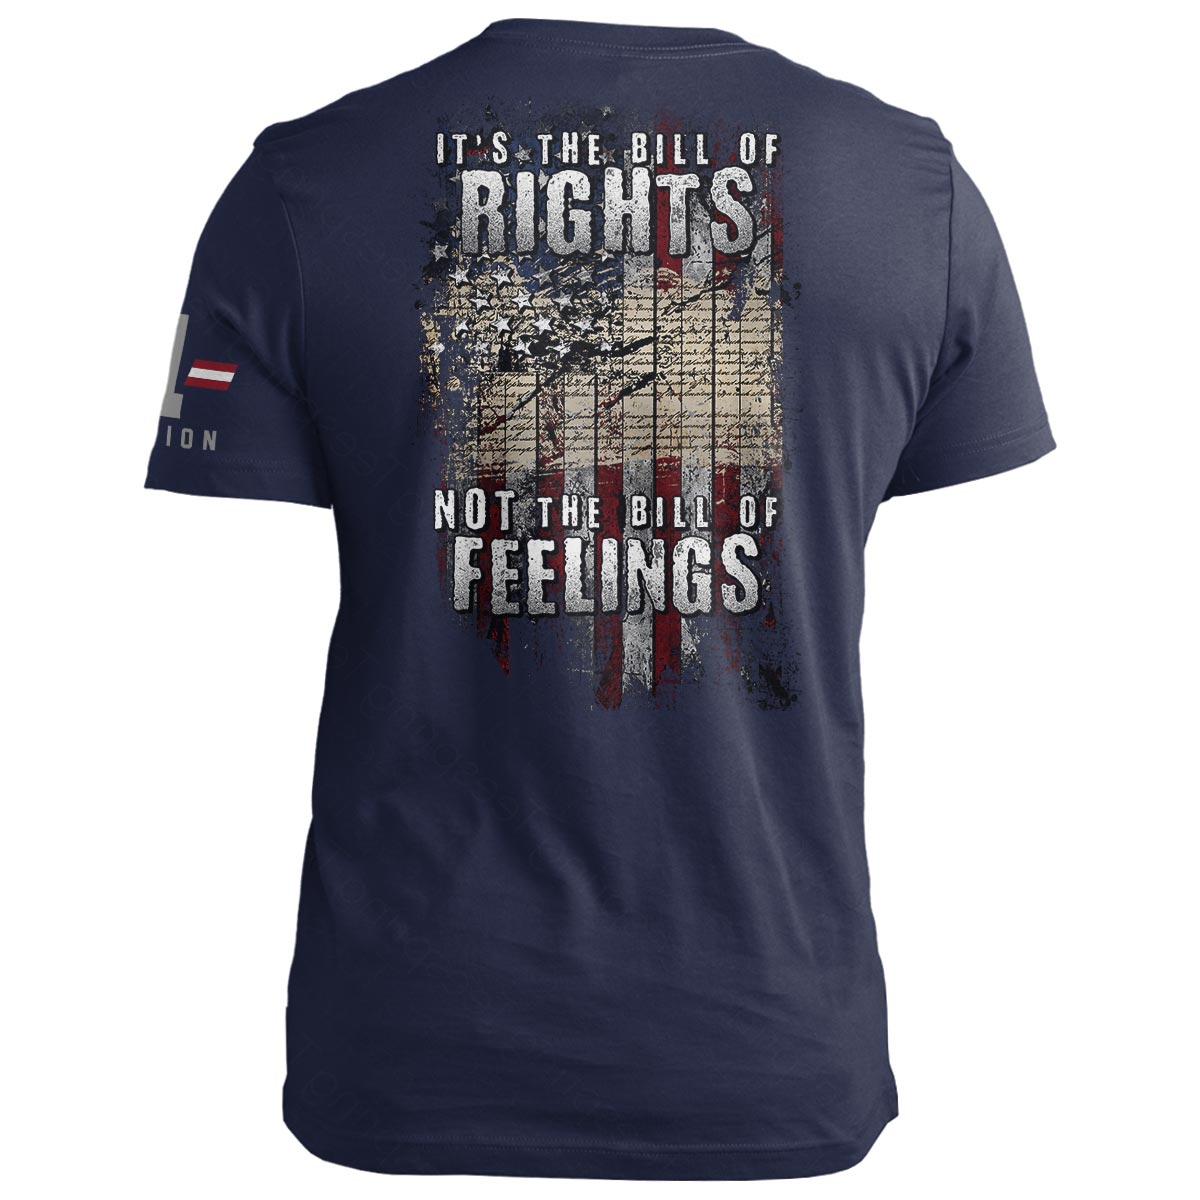 Bill of Rights, Not Feelings